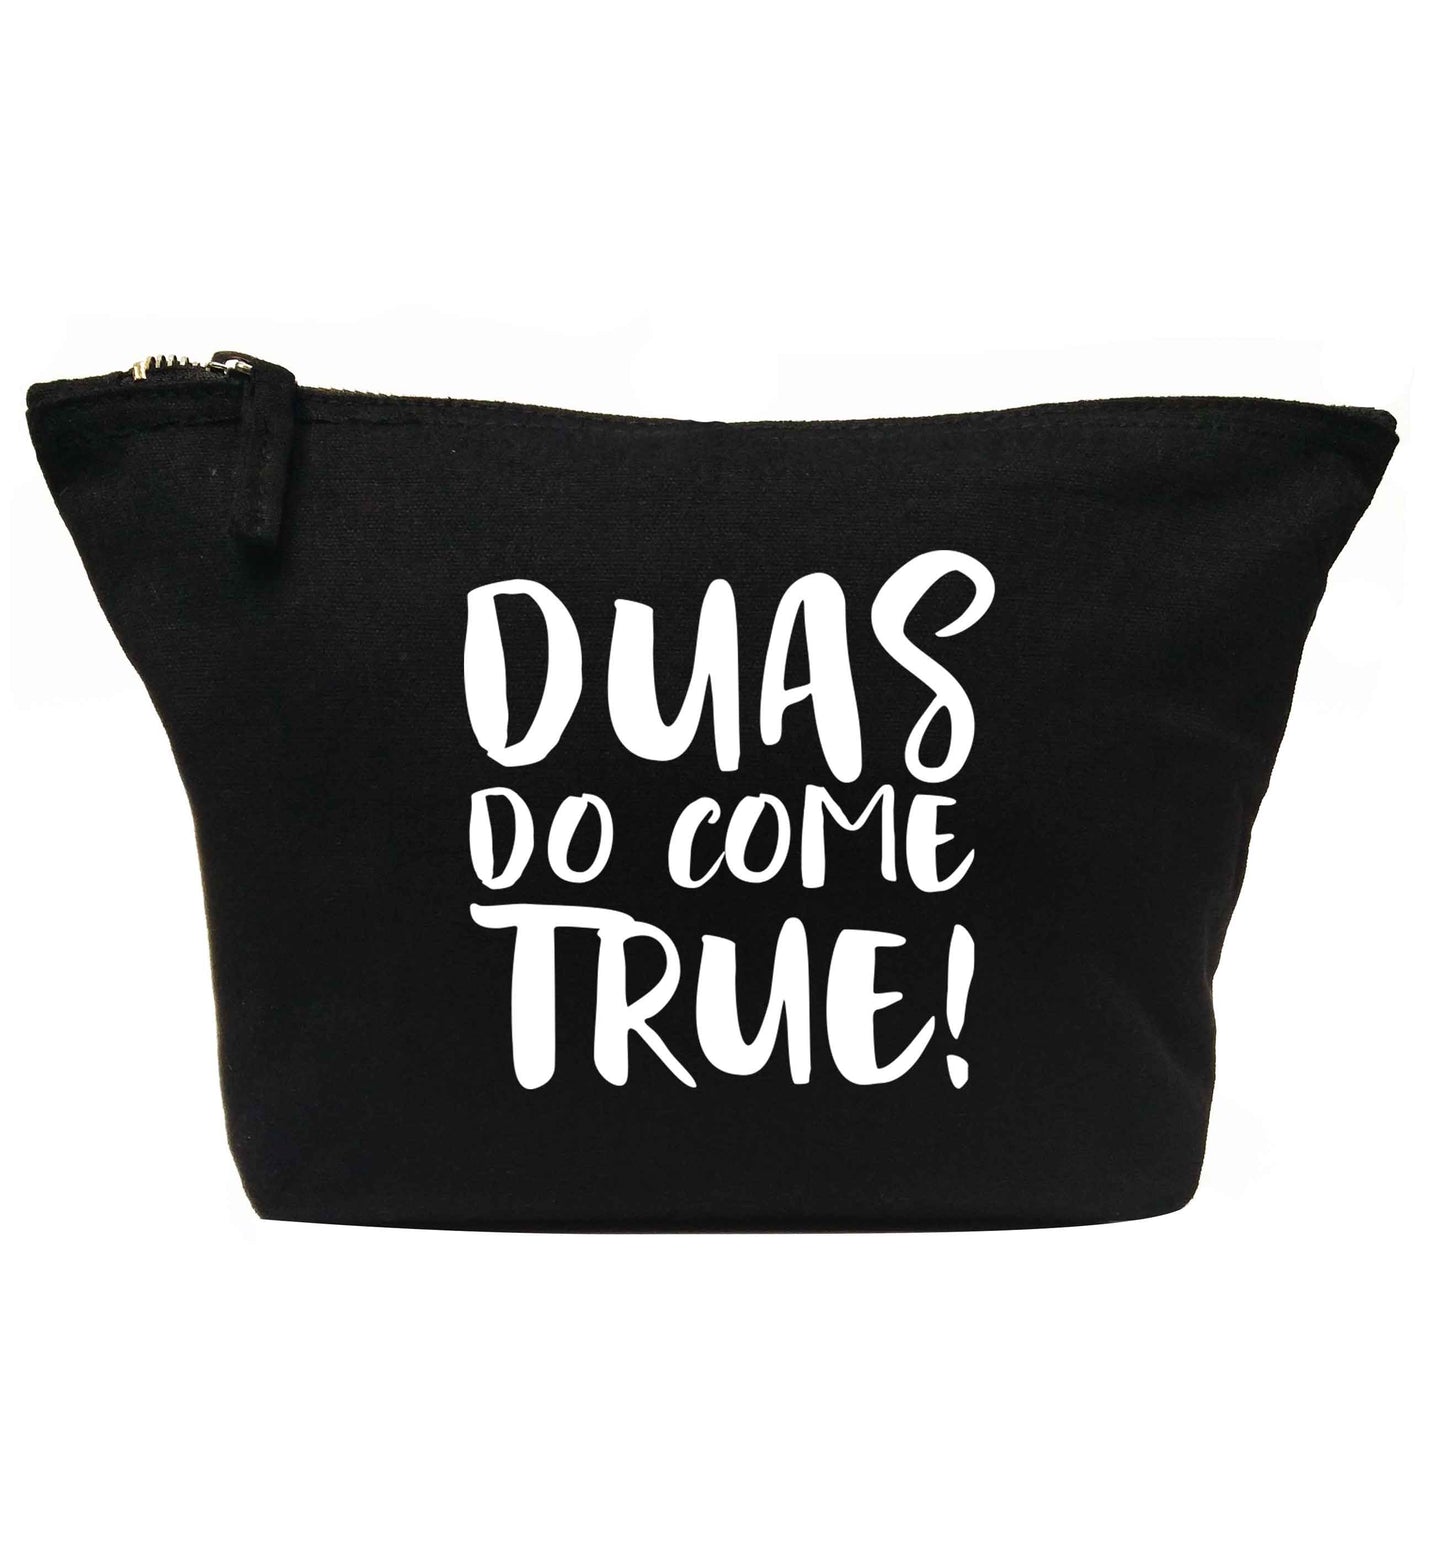 Duas do come true | Makeup / wash bag